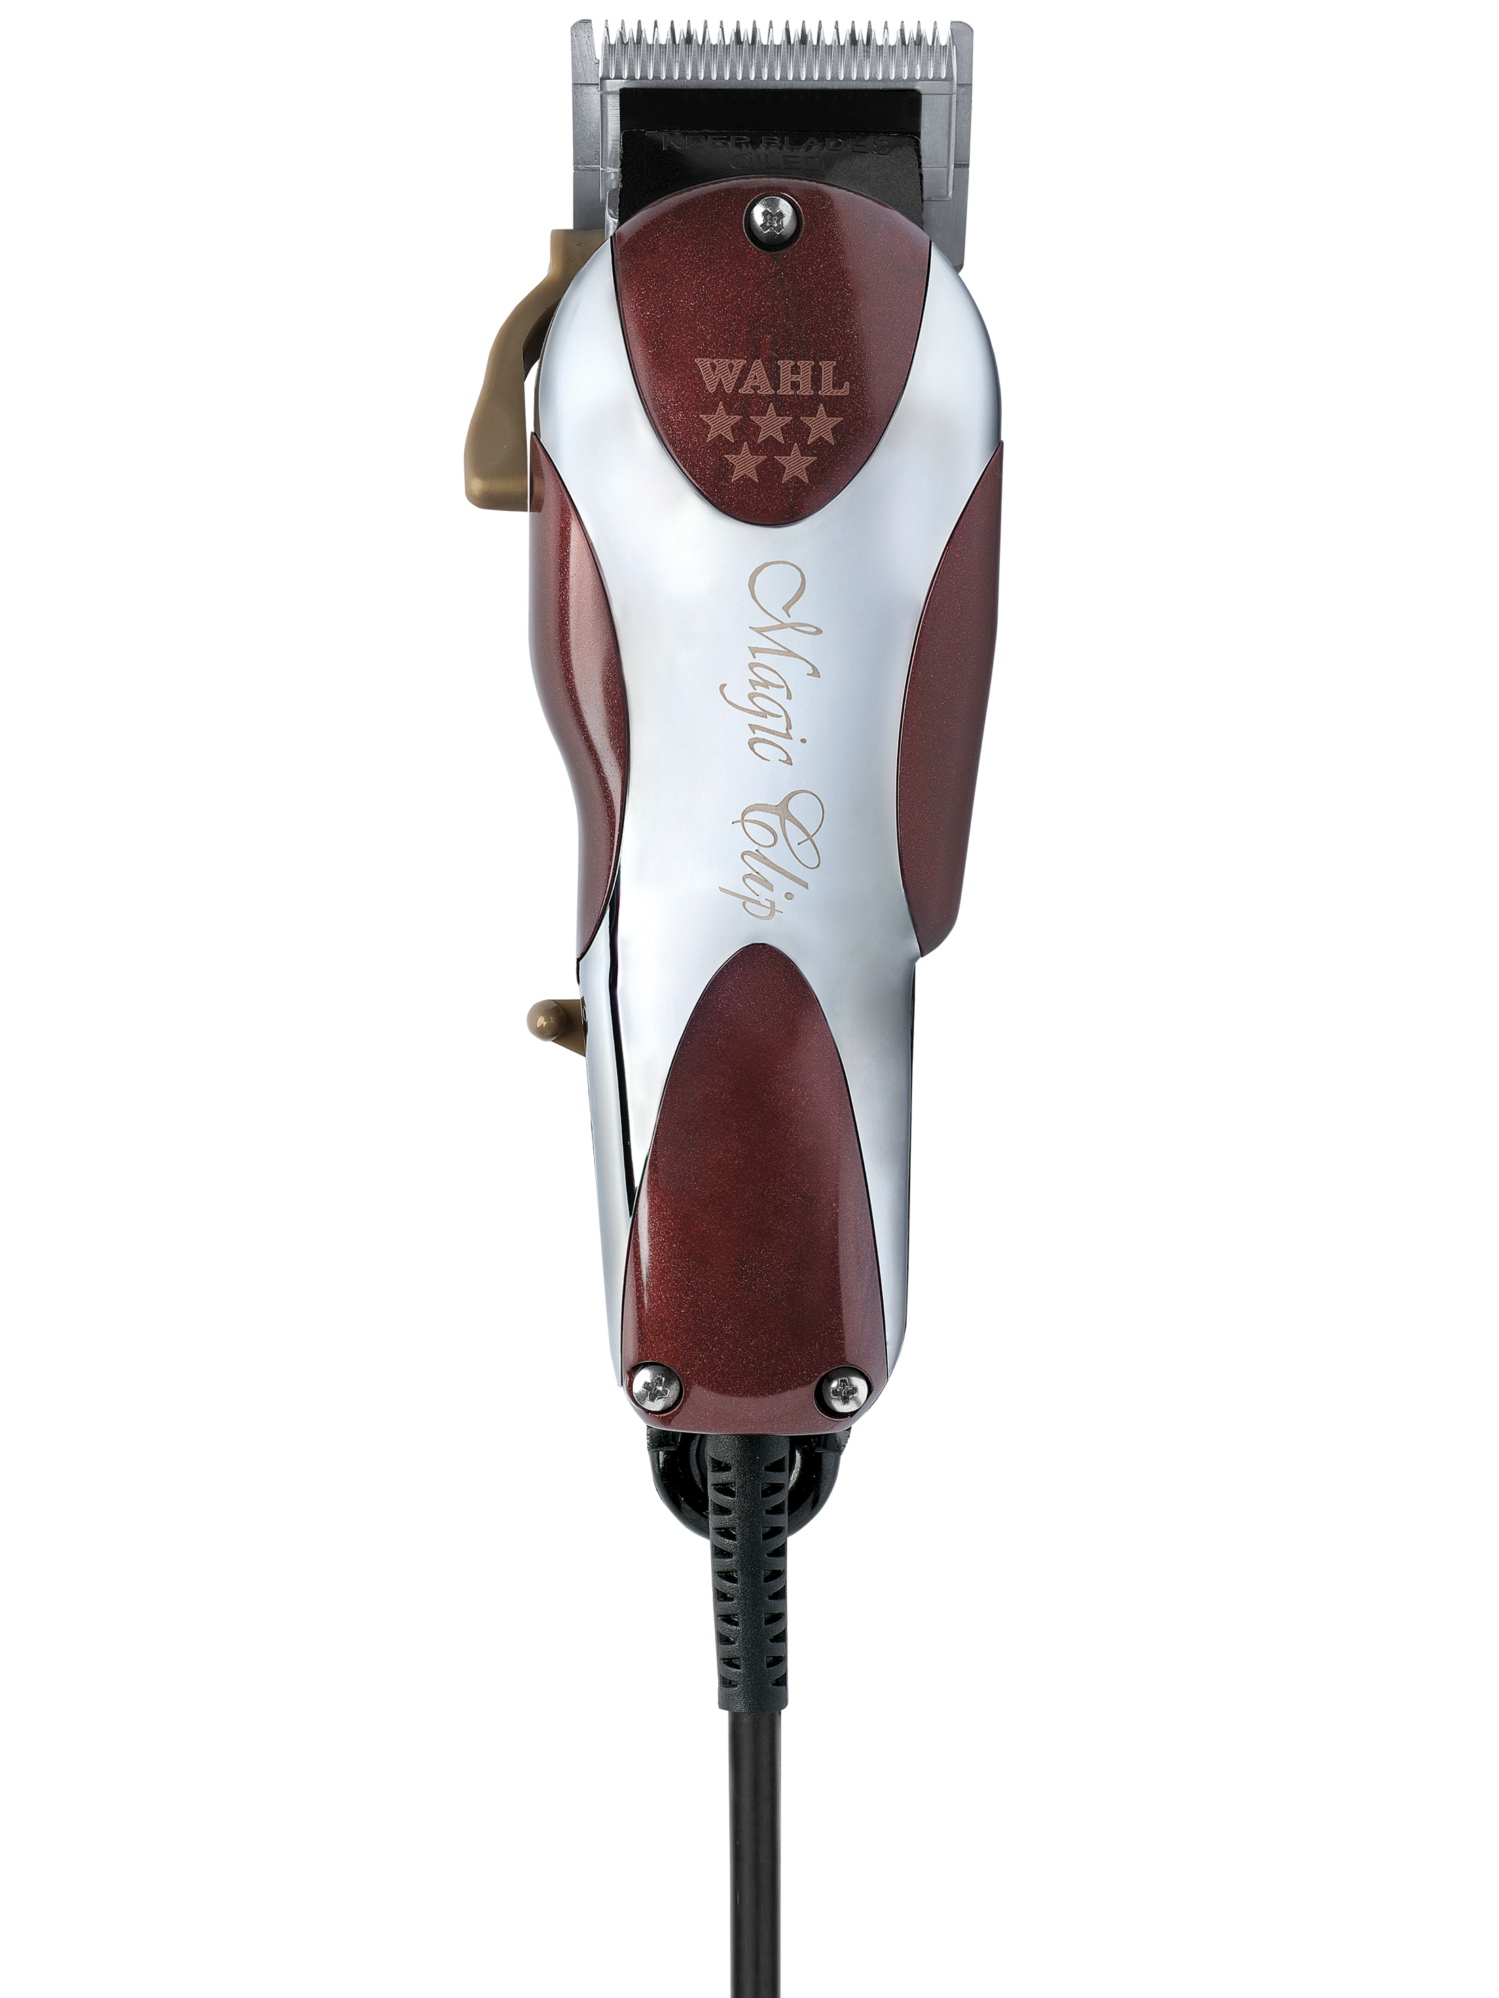 Profesionální strojek na vlasy Wahl Magic Clip 08451-316H + DÁREK ZDARMA